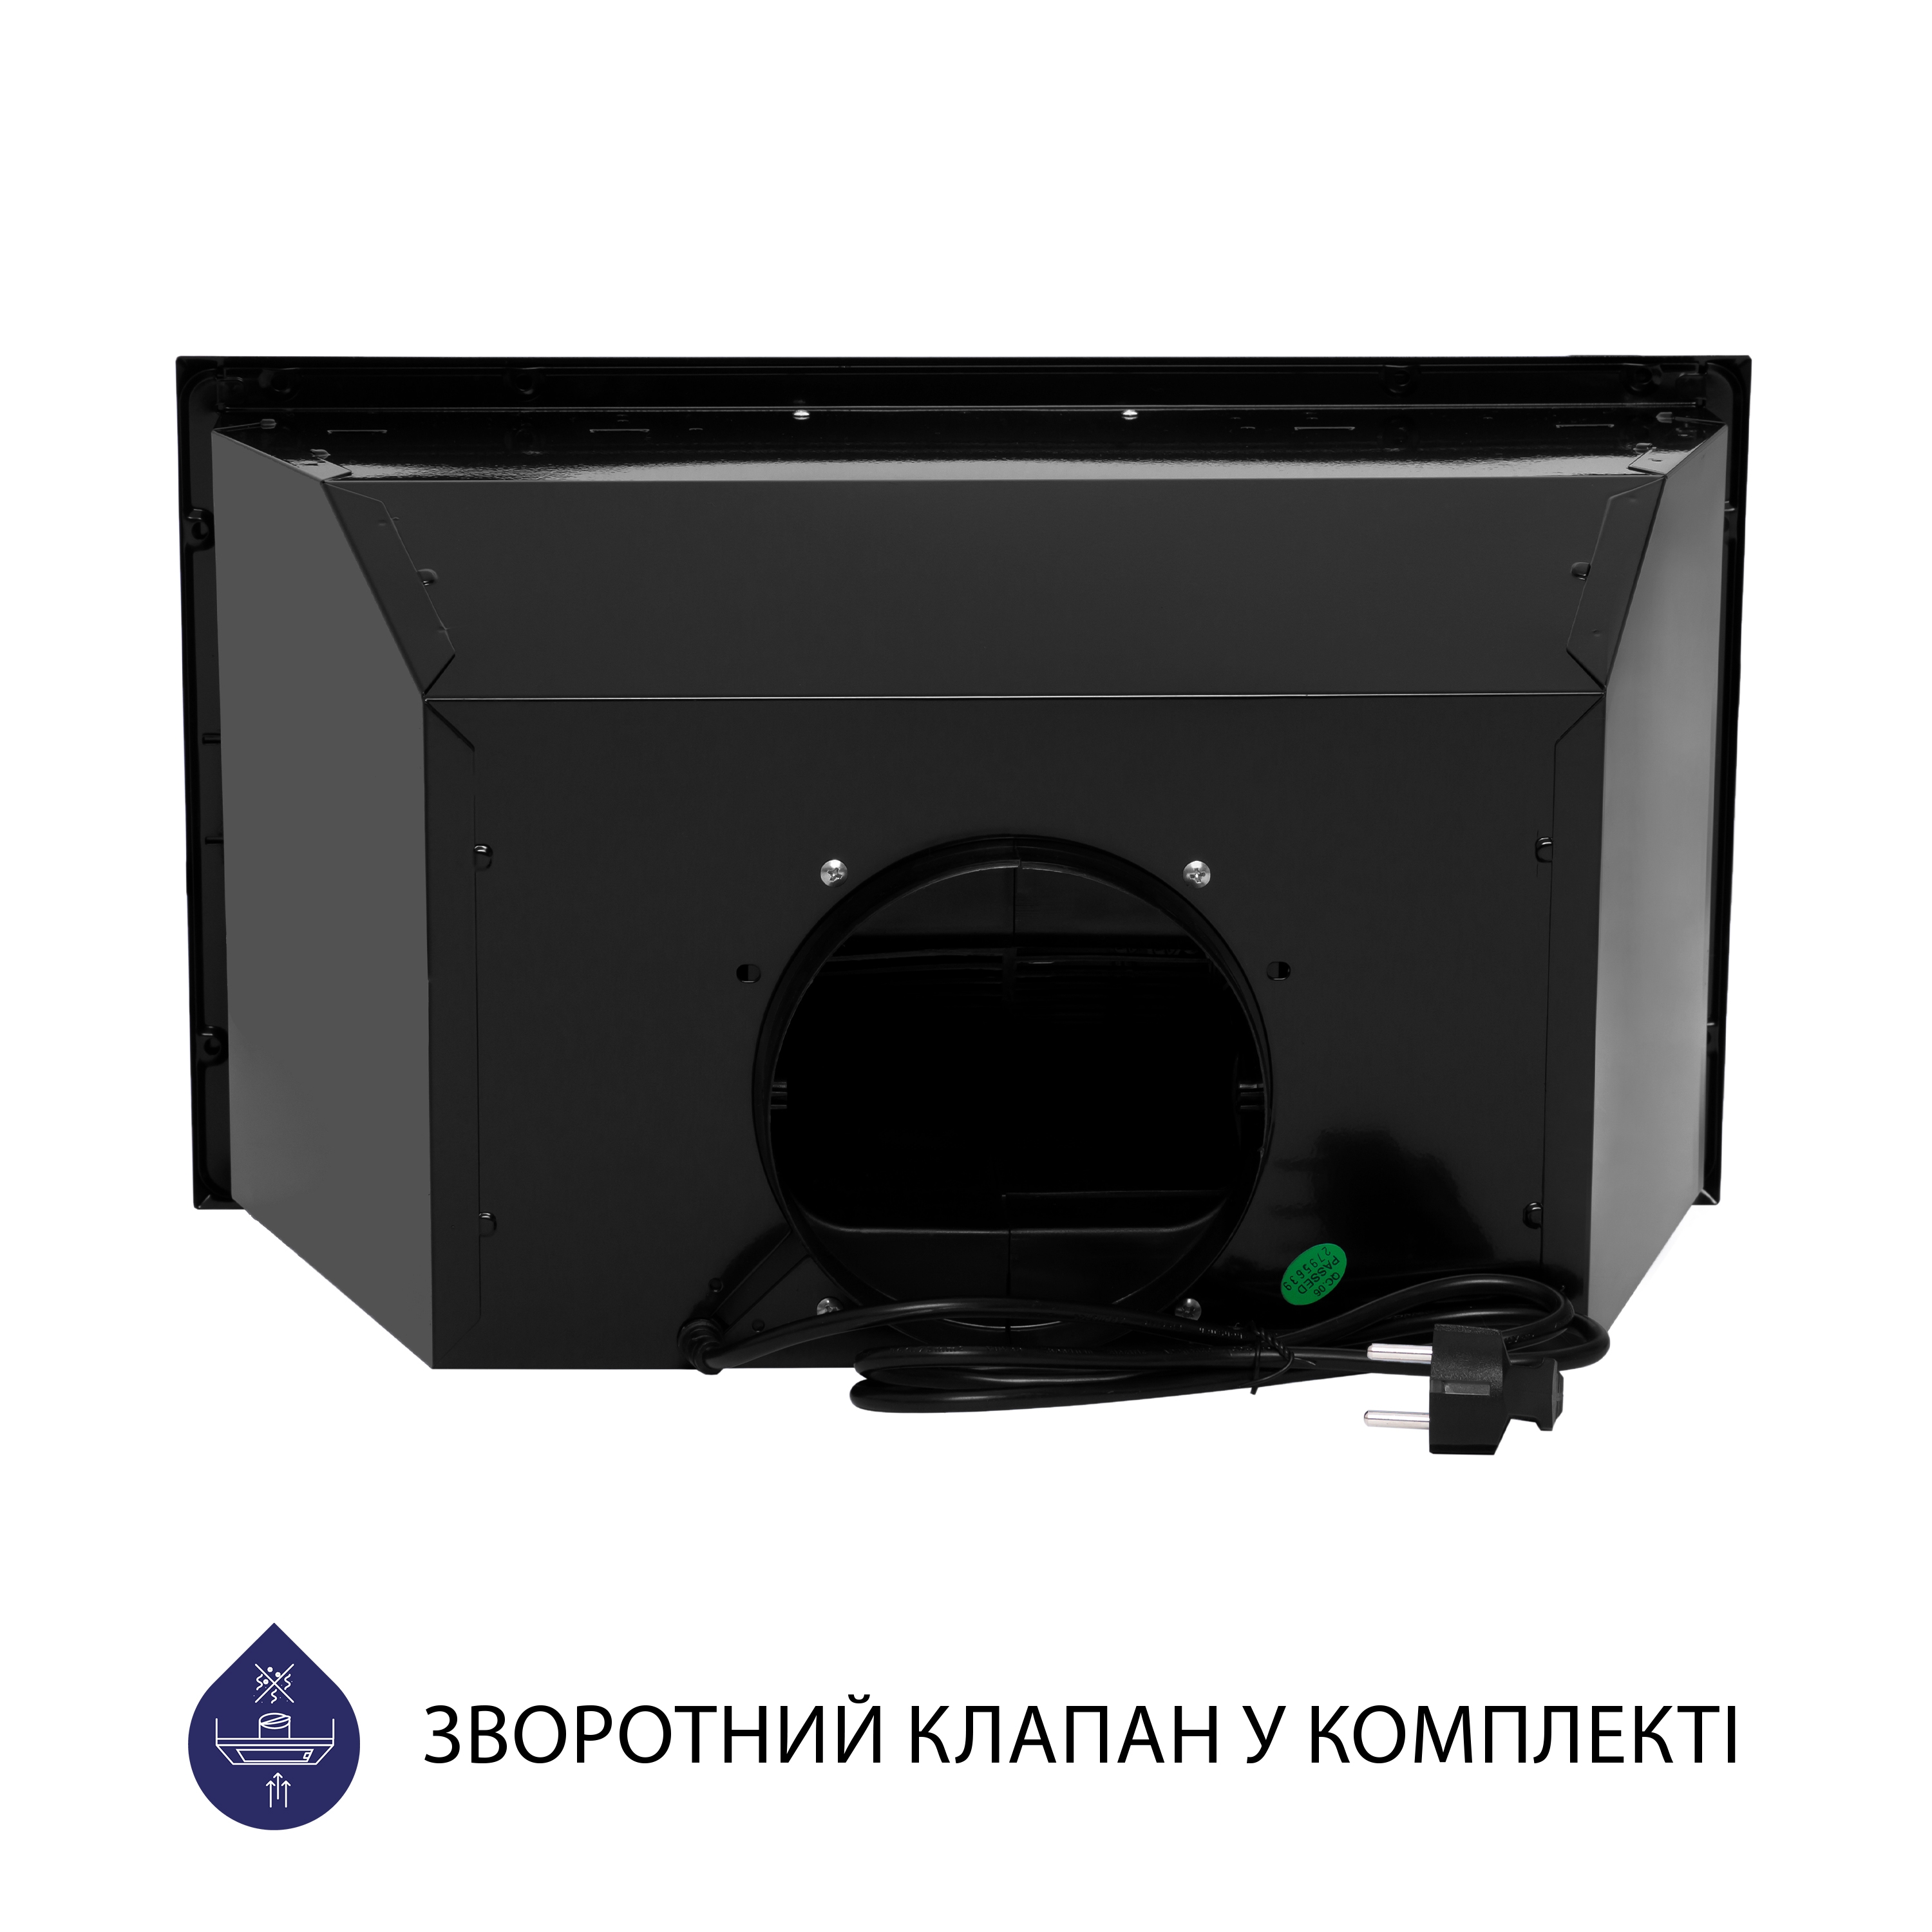 Витяжка кухонная полновстраиваемая Minola HBI 5622 BLF 1000 LED характеристики - фотография 7